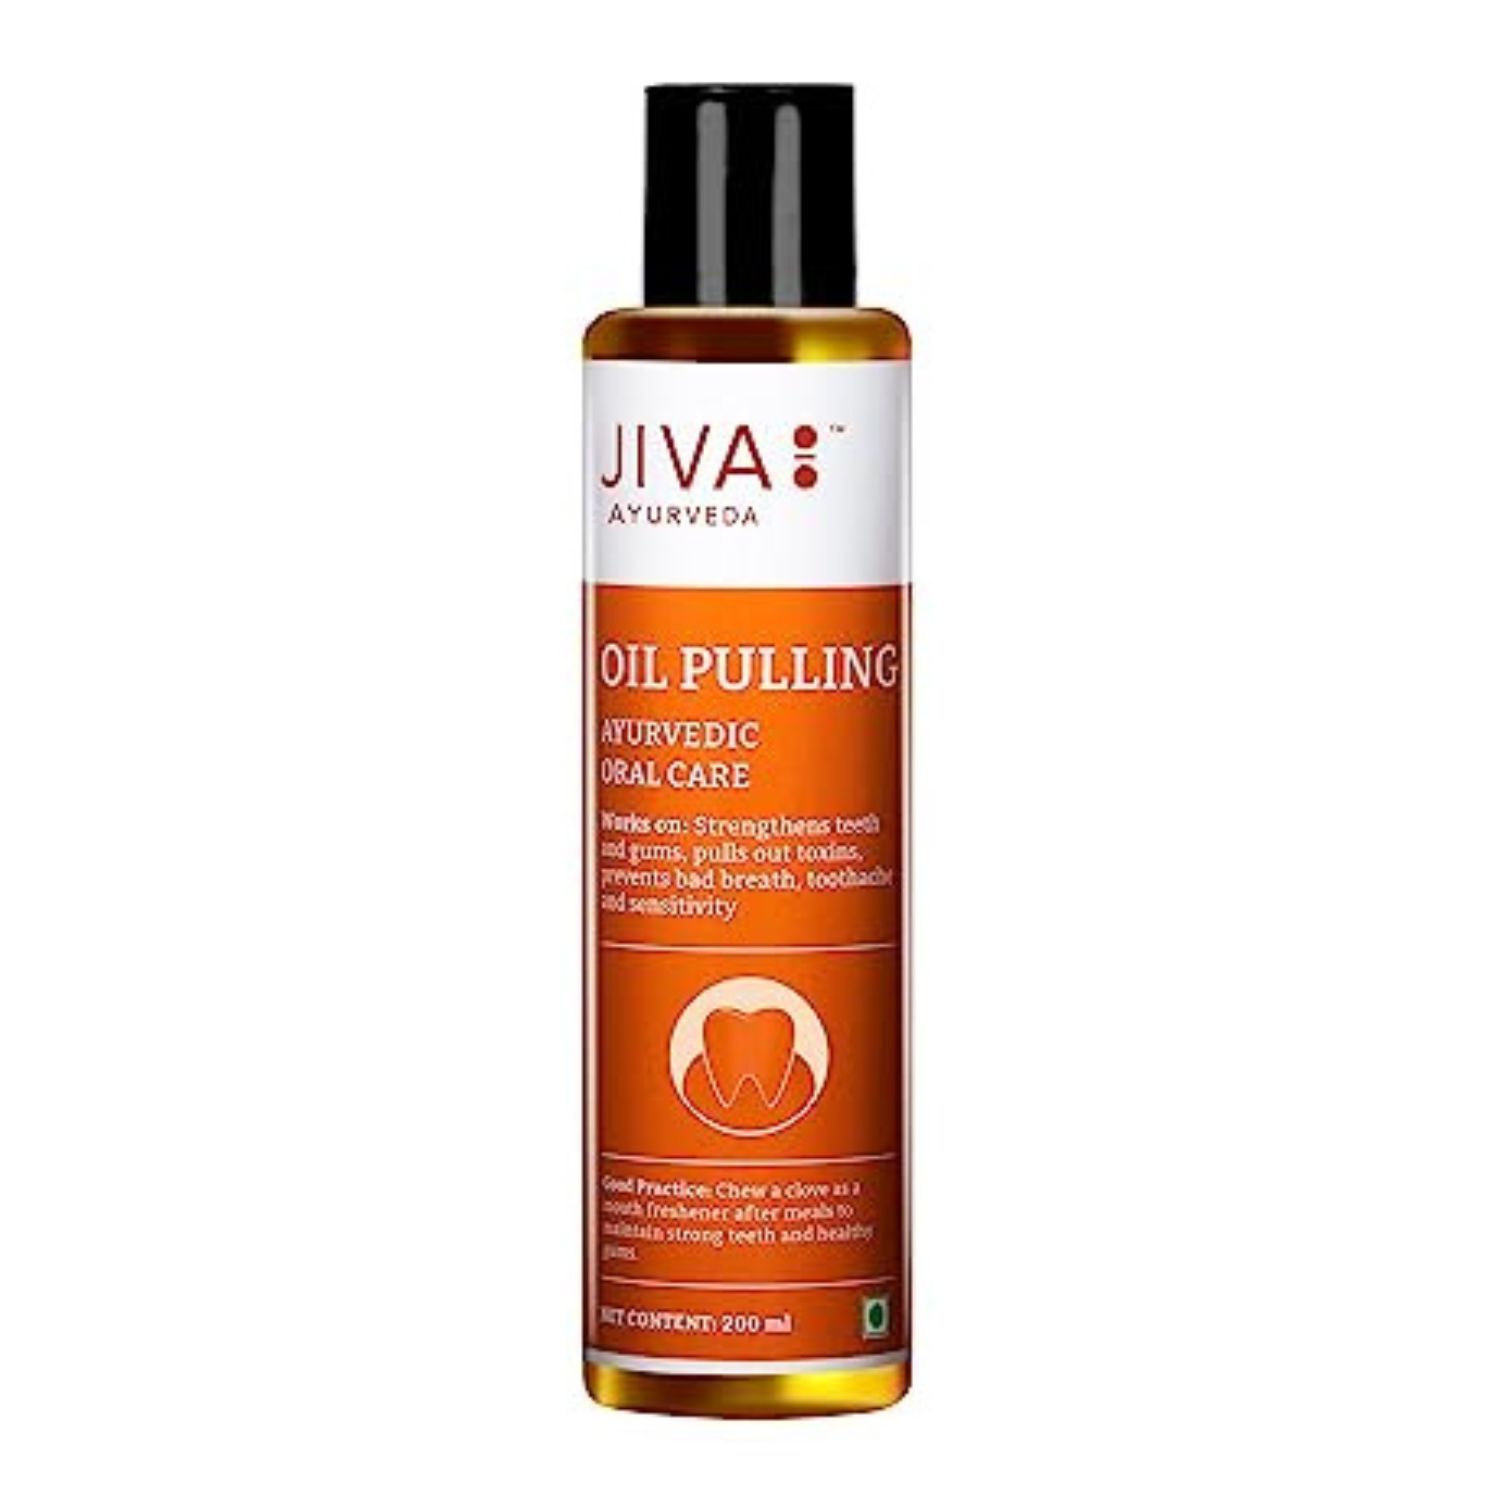 Buy Jiva Ayurveda Oil Pulling at Best Price Online